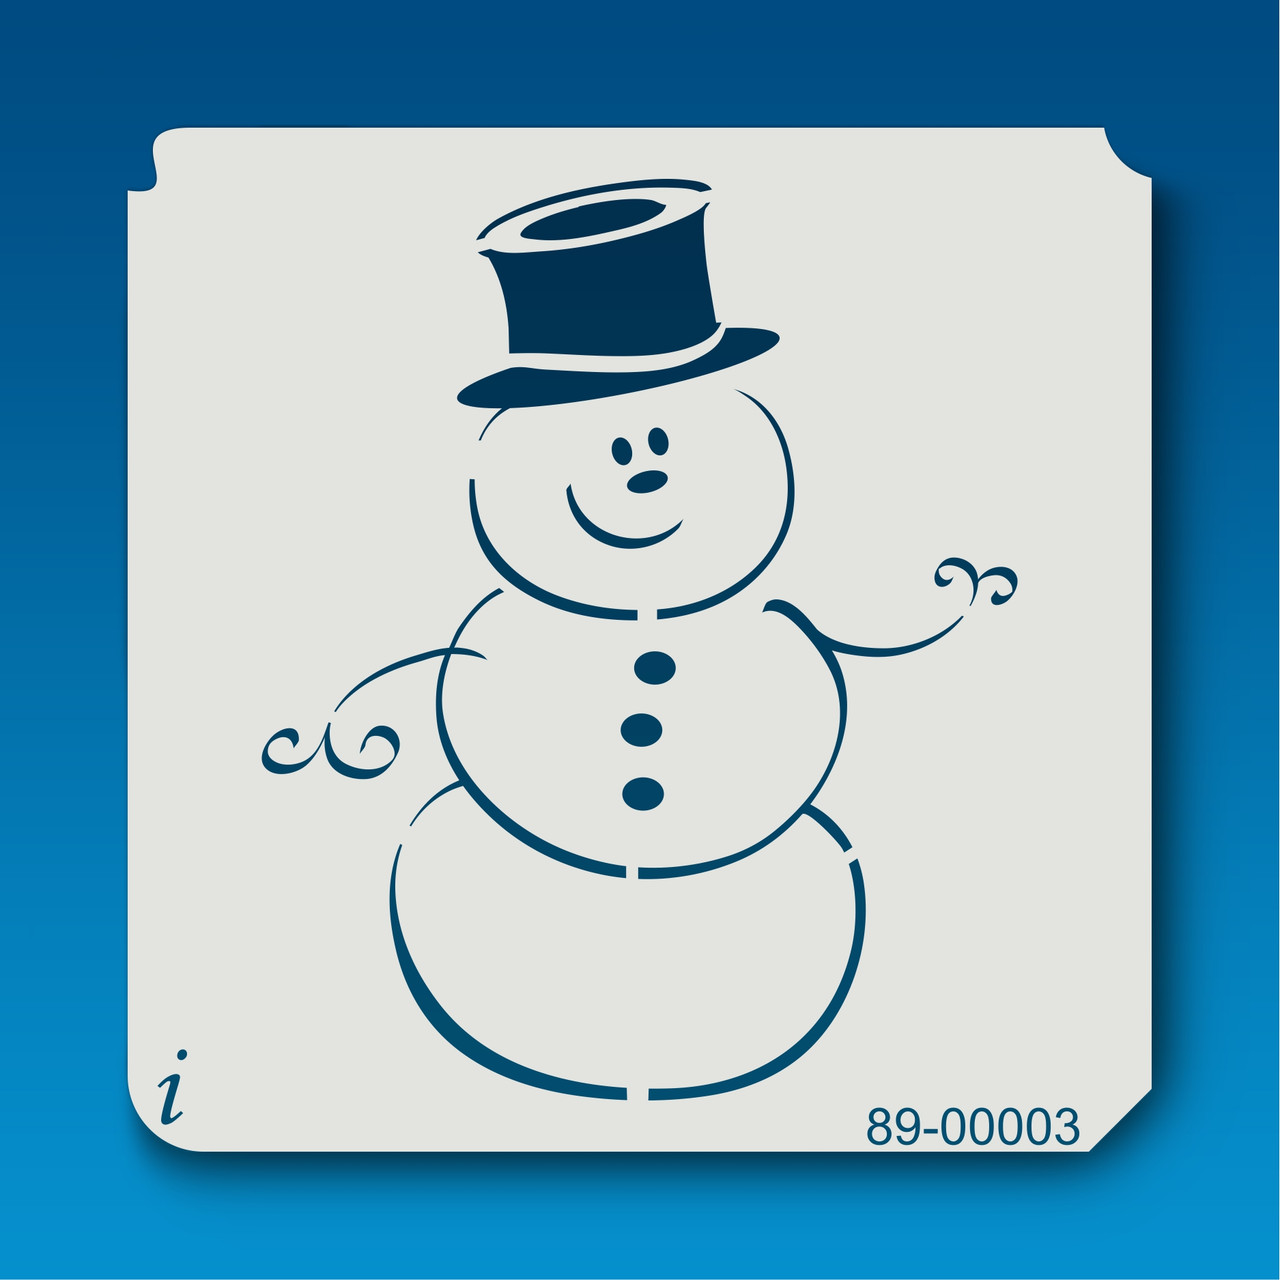 9264 LOVE snowman stencil